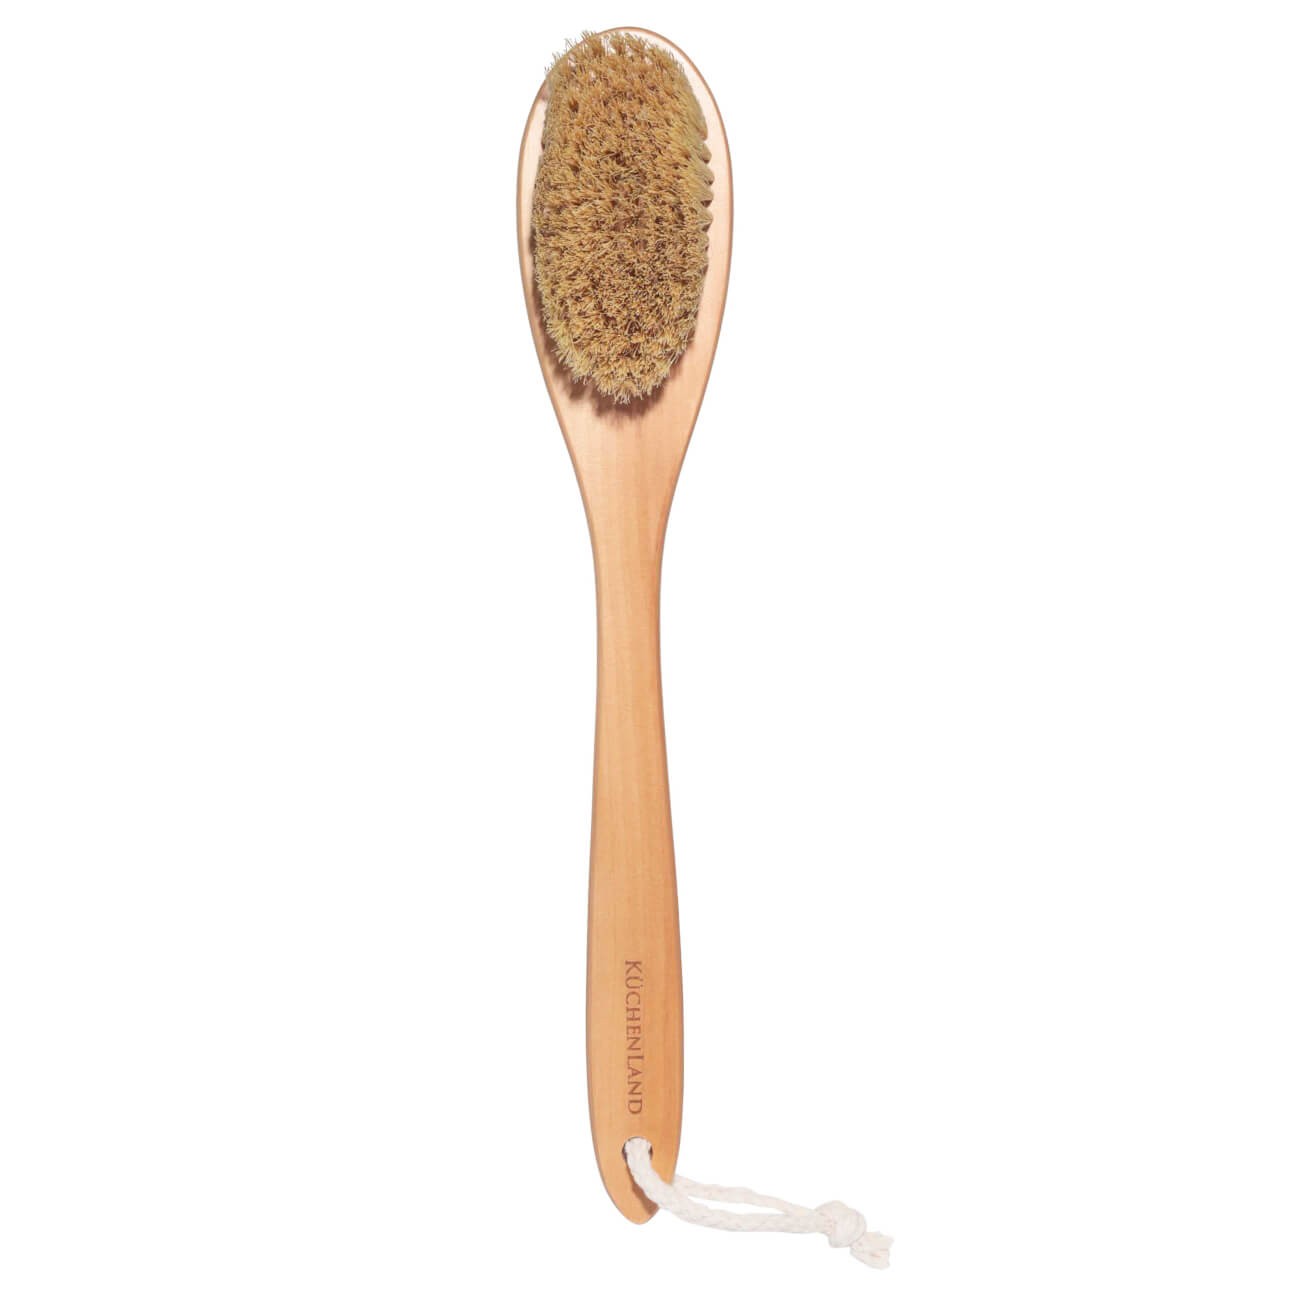 Щетка для сухого массажа, 38 см, дерево/растительное волокно, Bamboo spa зубная щетка colgate массажер зубная щетка для здоровья десен